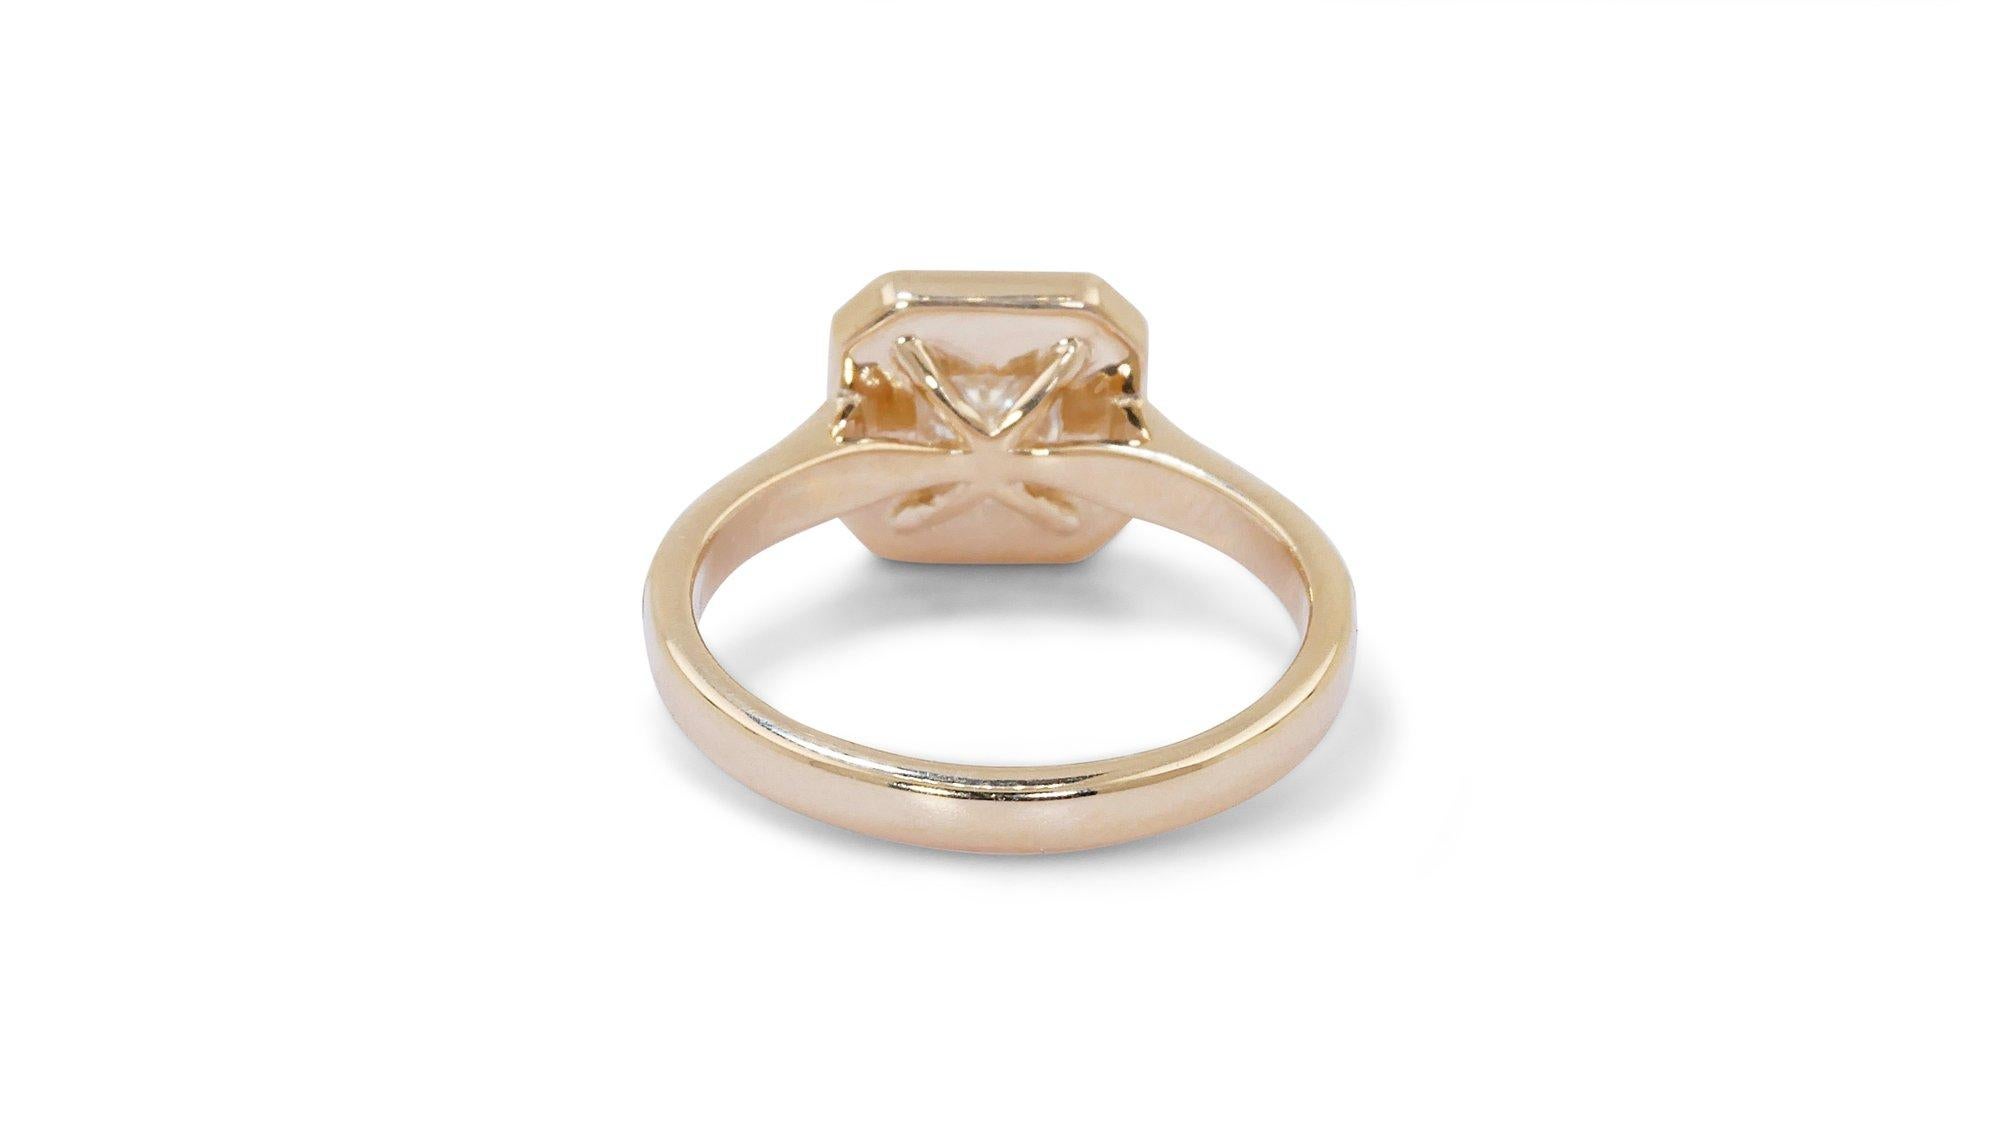 Stunning 1.35 total ct Princess Diamond Ring in 18K Yellow Gold w/ IGI Cert 2